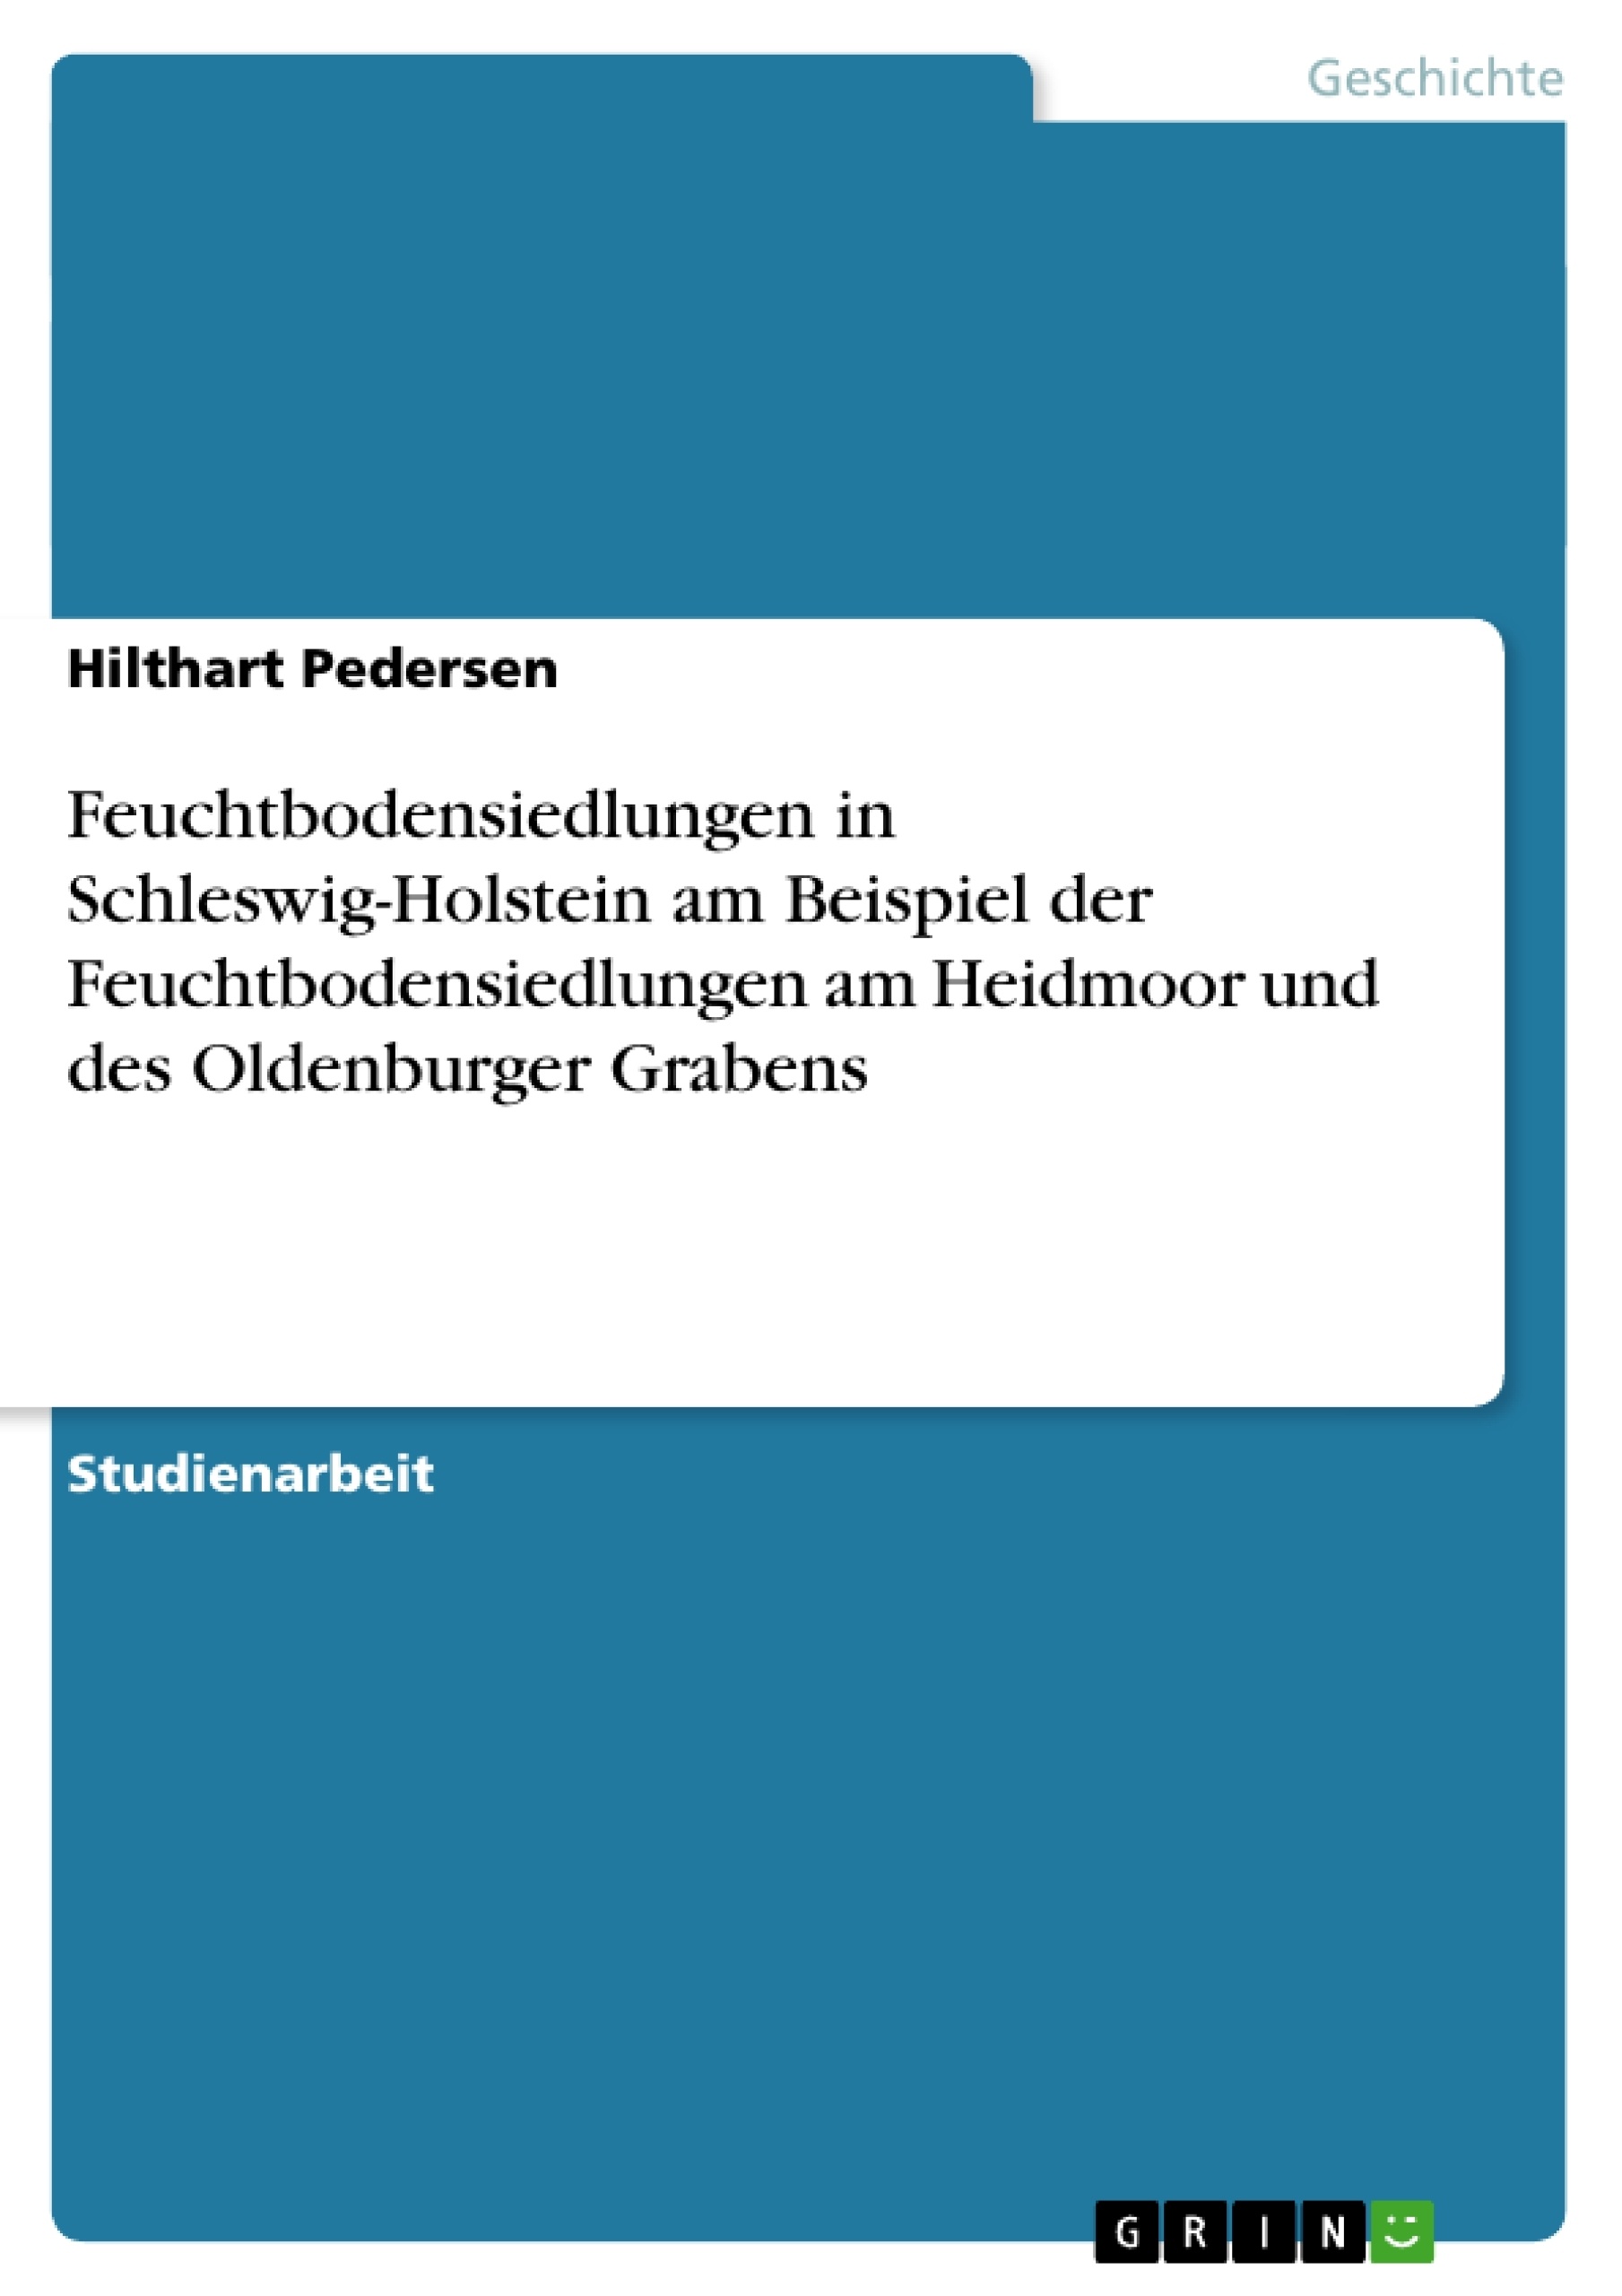 Title: Feuchtbodensiedlungen in Schleswig-Holstein am Beispiel der Feuchtbodensiedlungen am Heidmoor und des Oldenburger Grabens